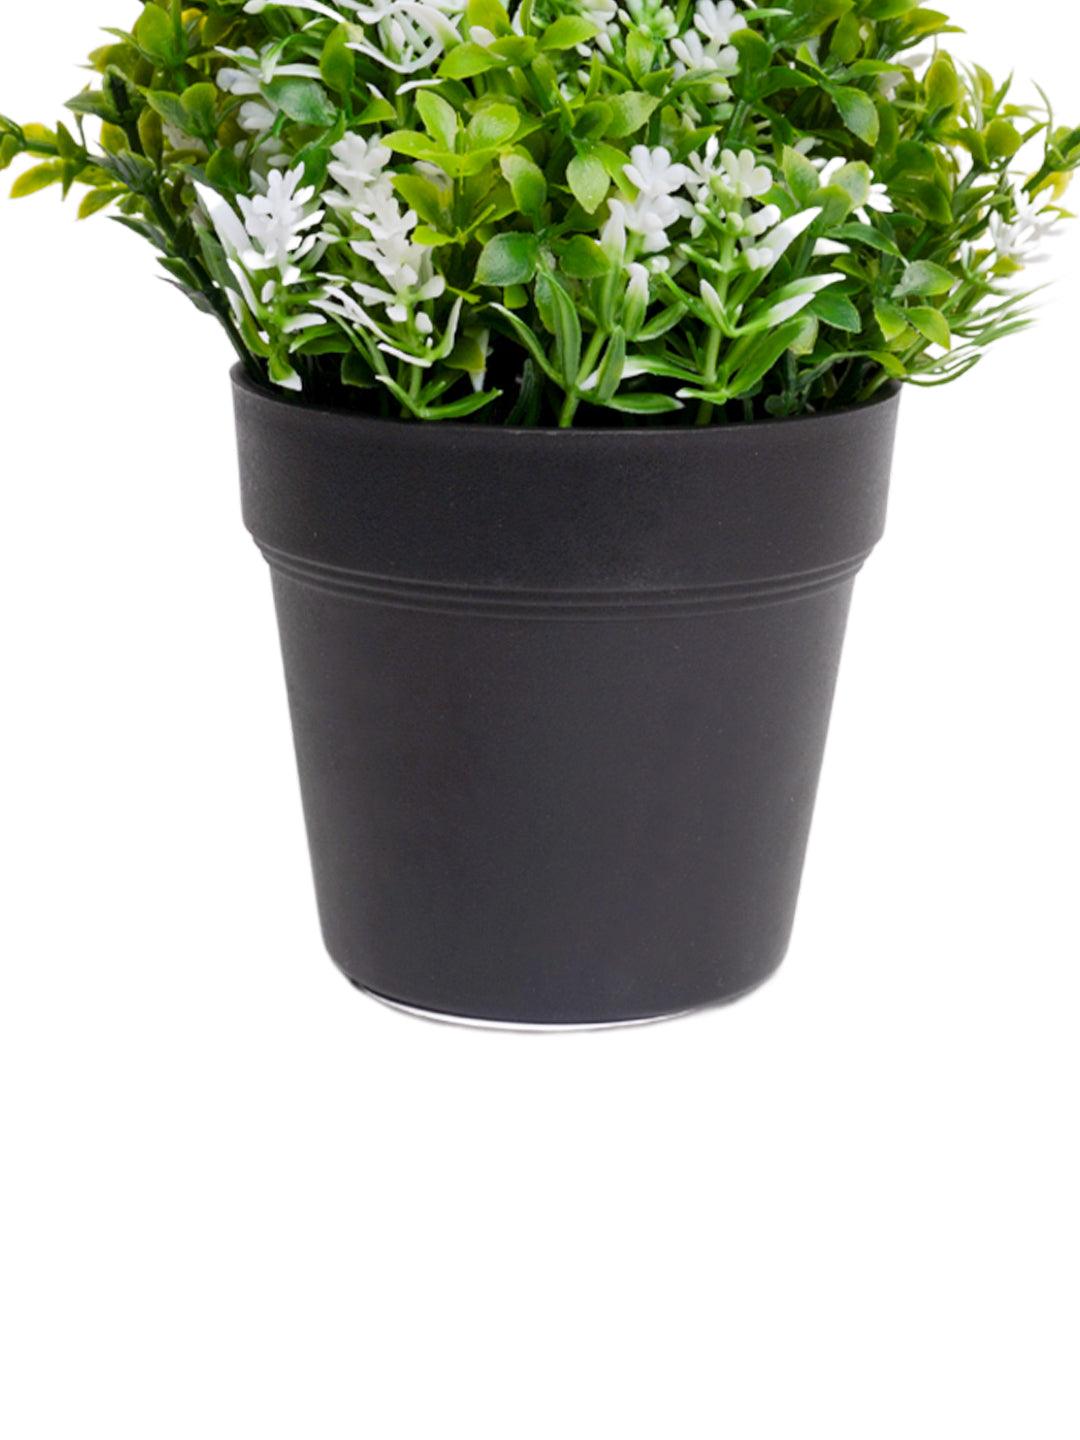 VON CASA White Flower Artificial Potted Plant - MARKET 99